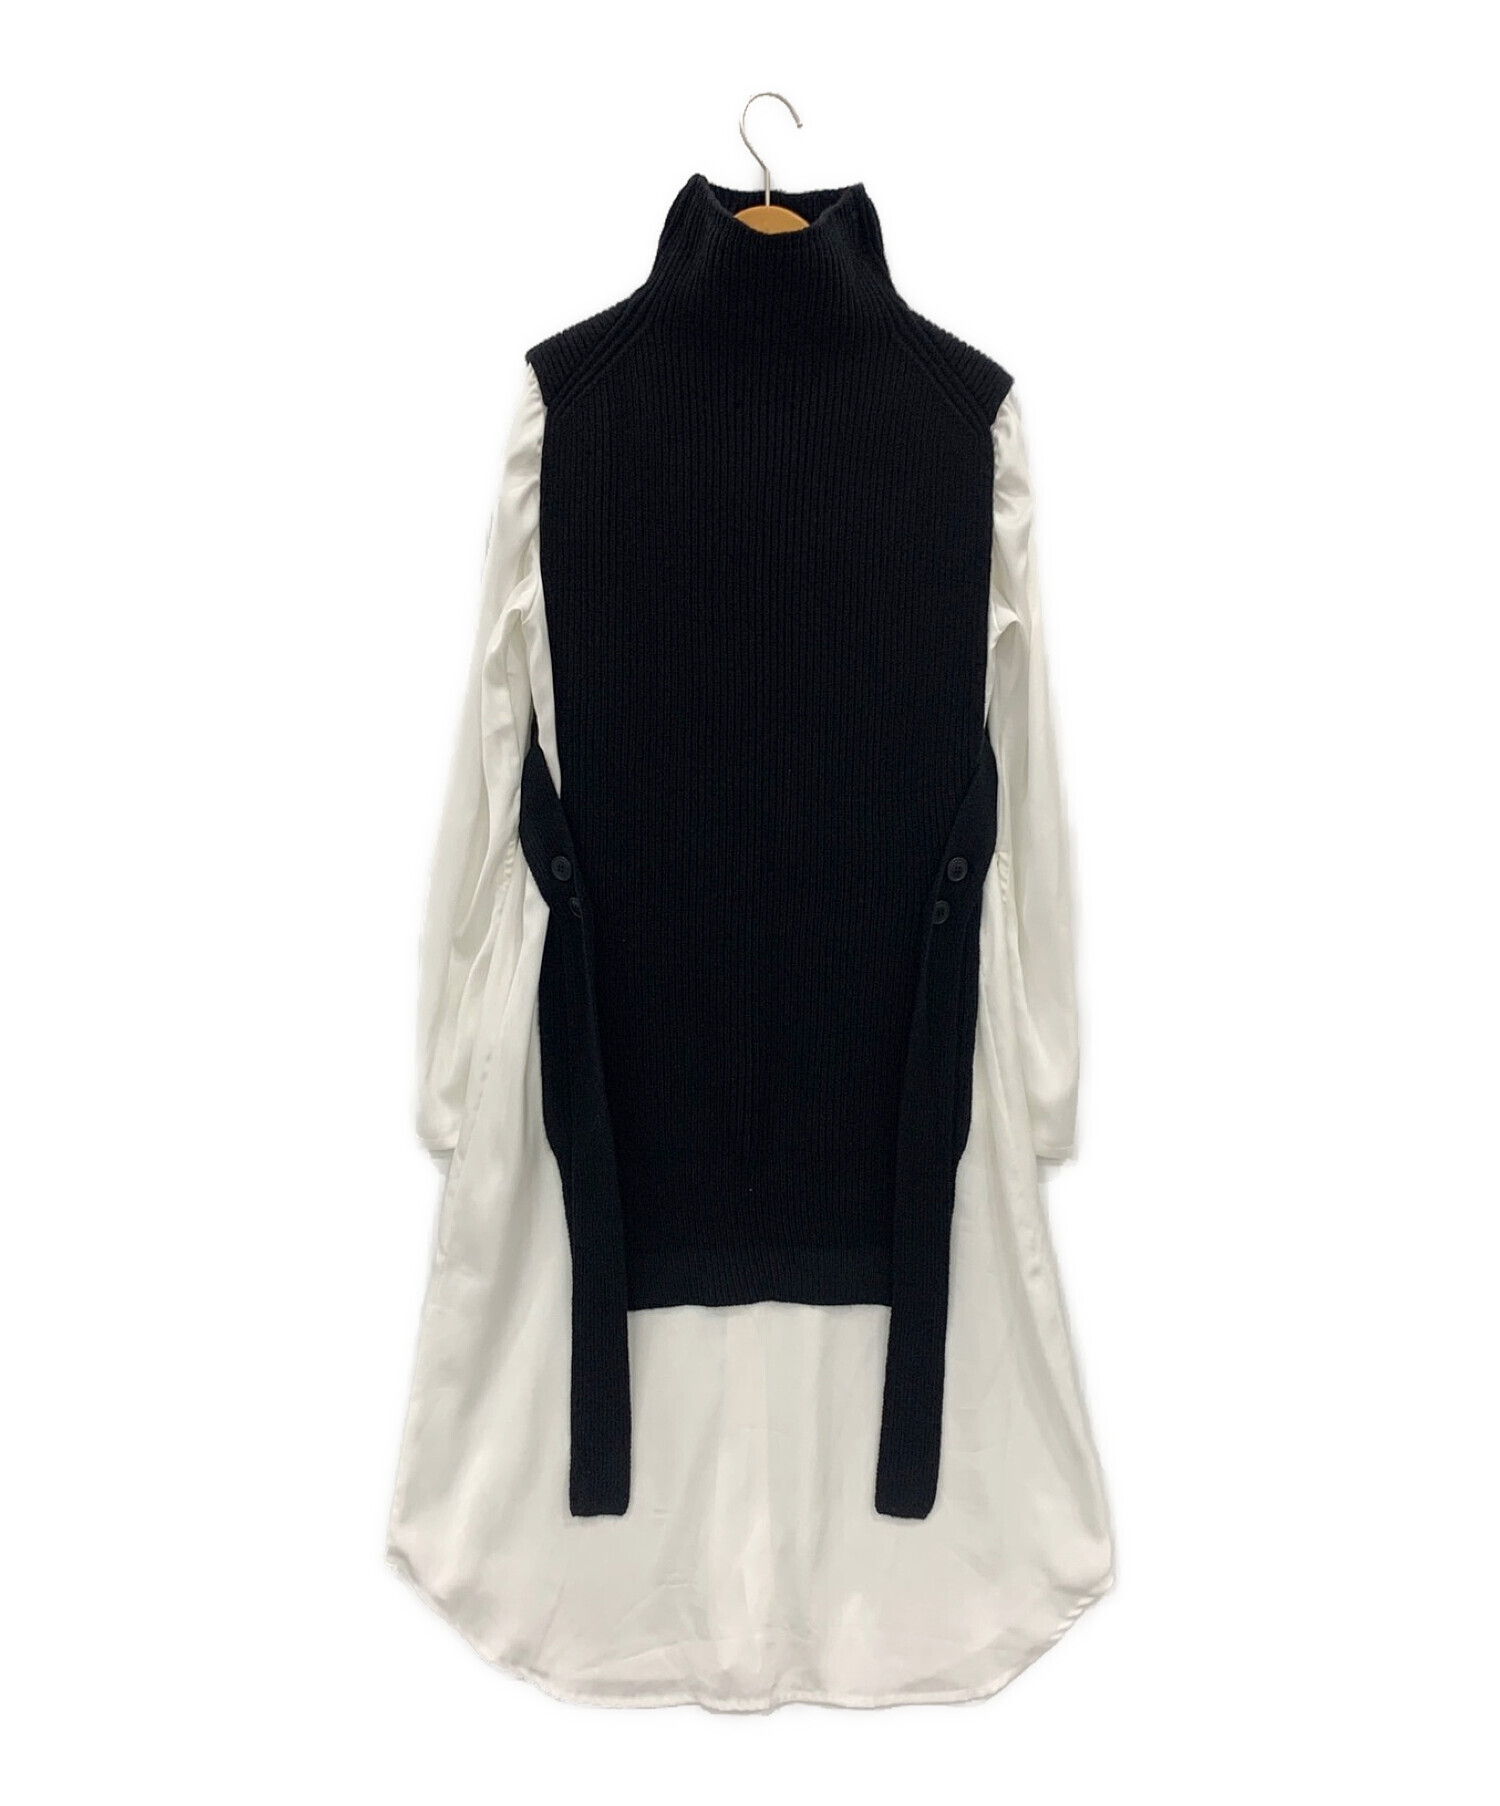 正規店新作Ameri vintage VEST LAYERED SHIRT DRESS ロングワンピース/マキシワンピース